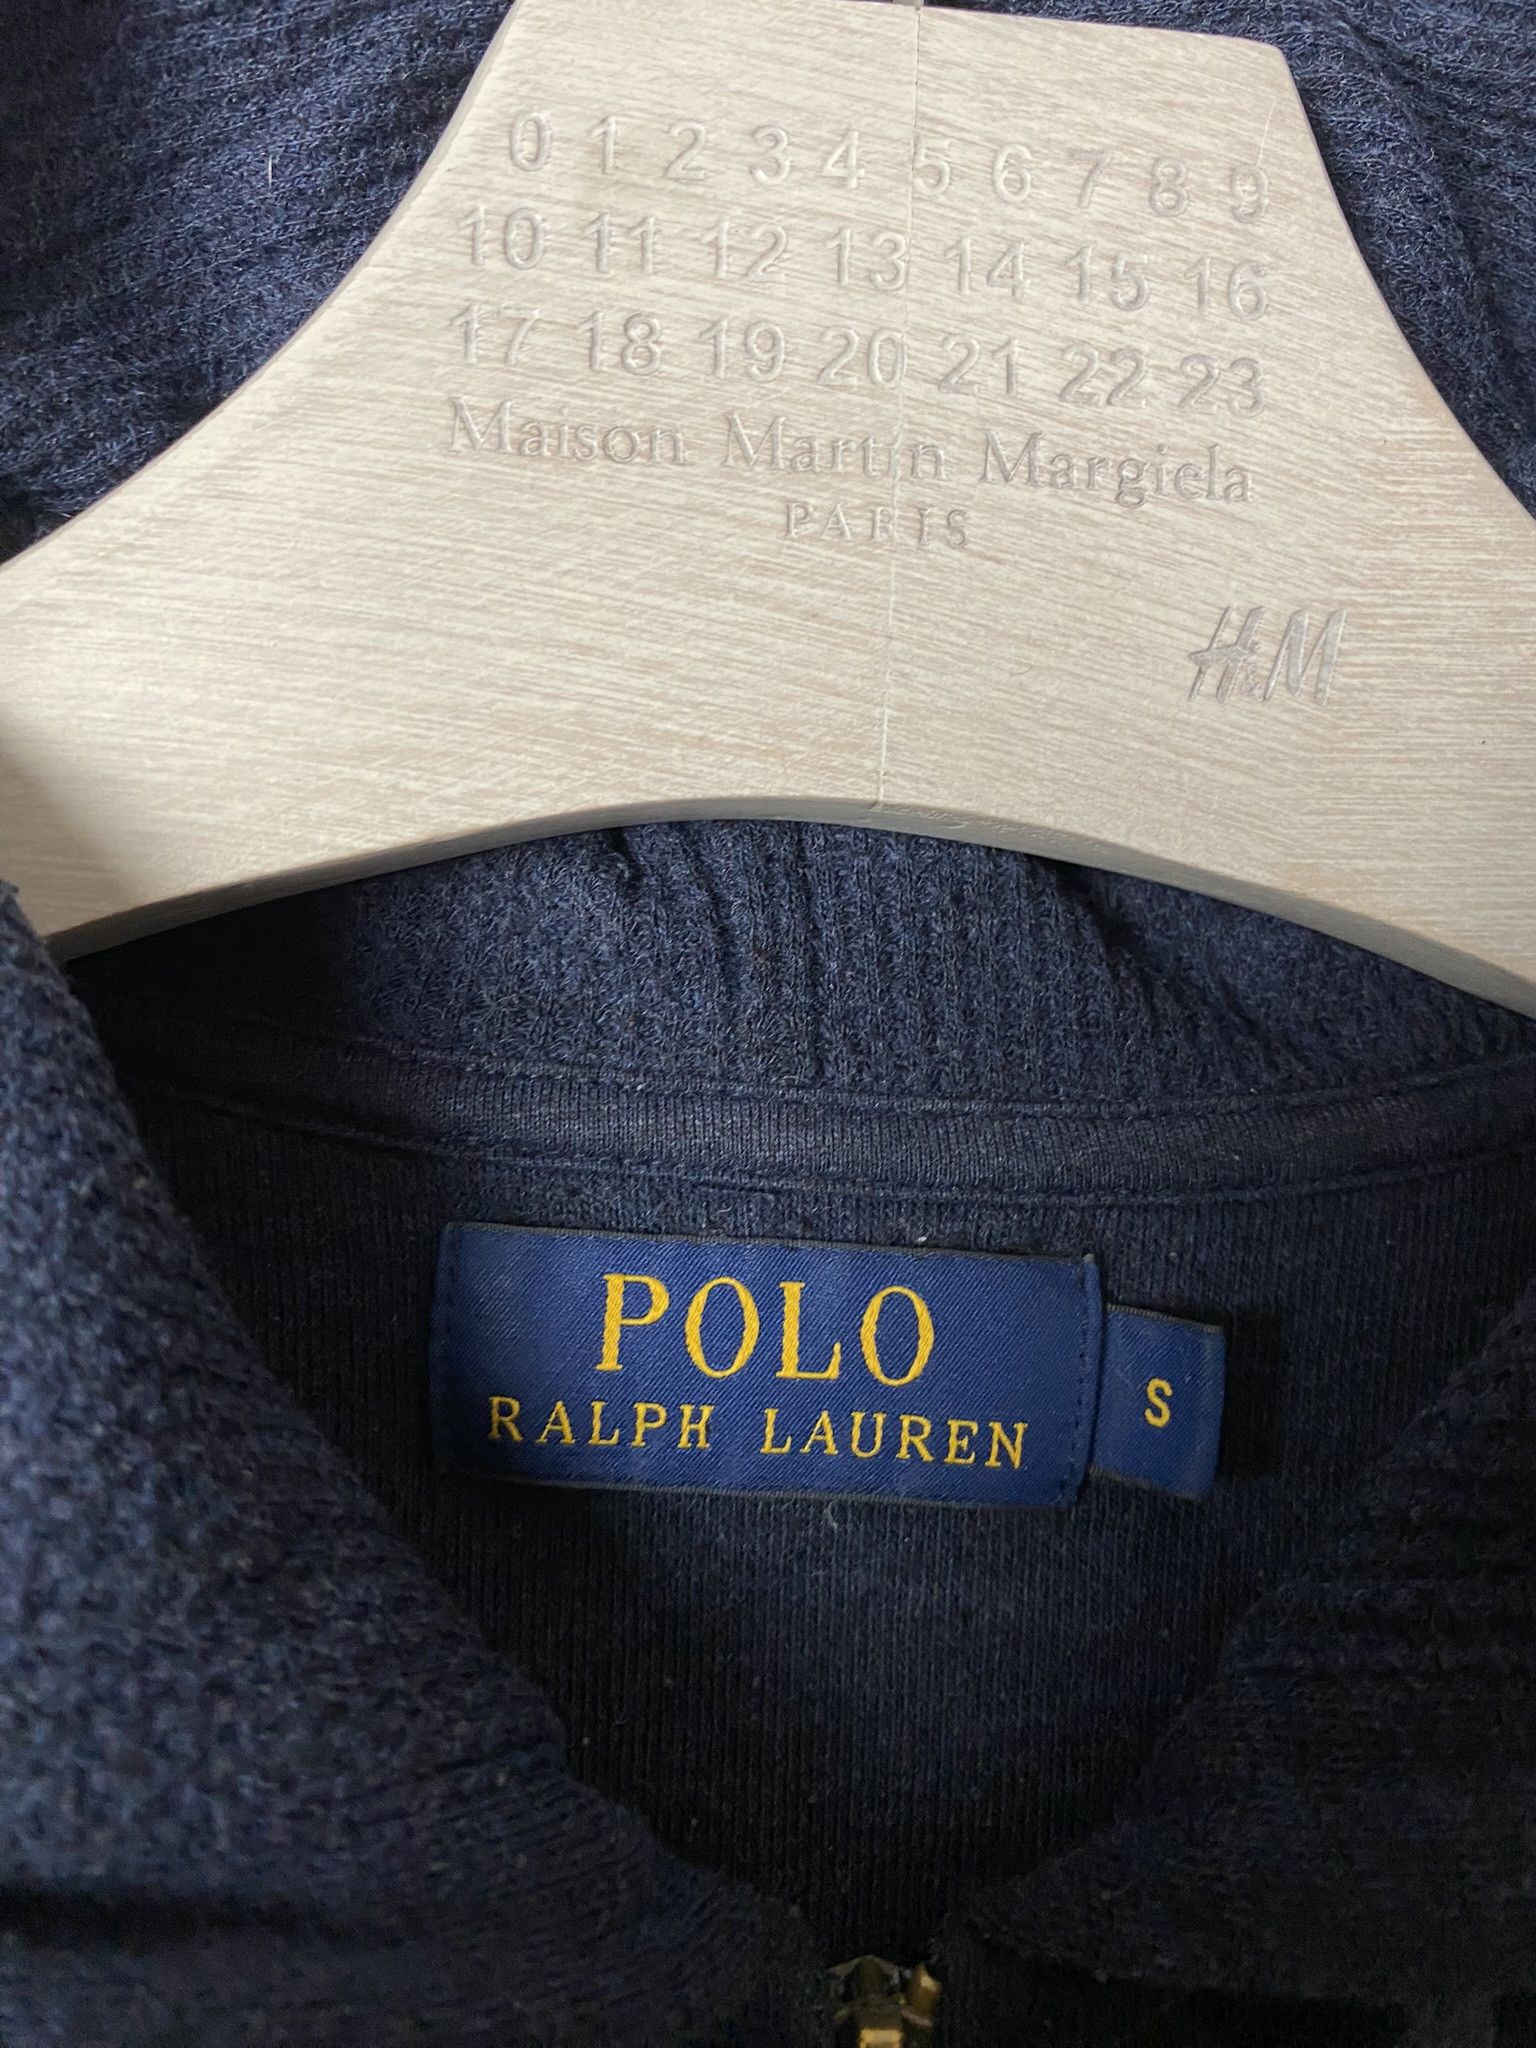 Polo Ralph Lauren Polo Ralph Lauren light small logo zip-up hooide Size S / US 4 / IT 40 - 3 Thumbnail